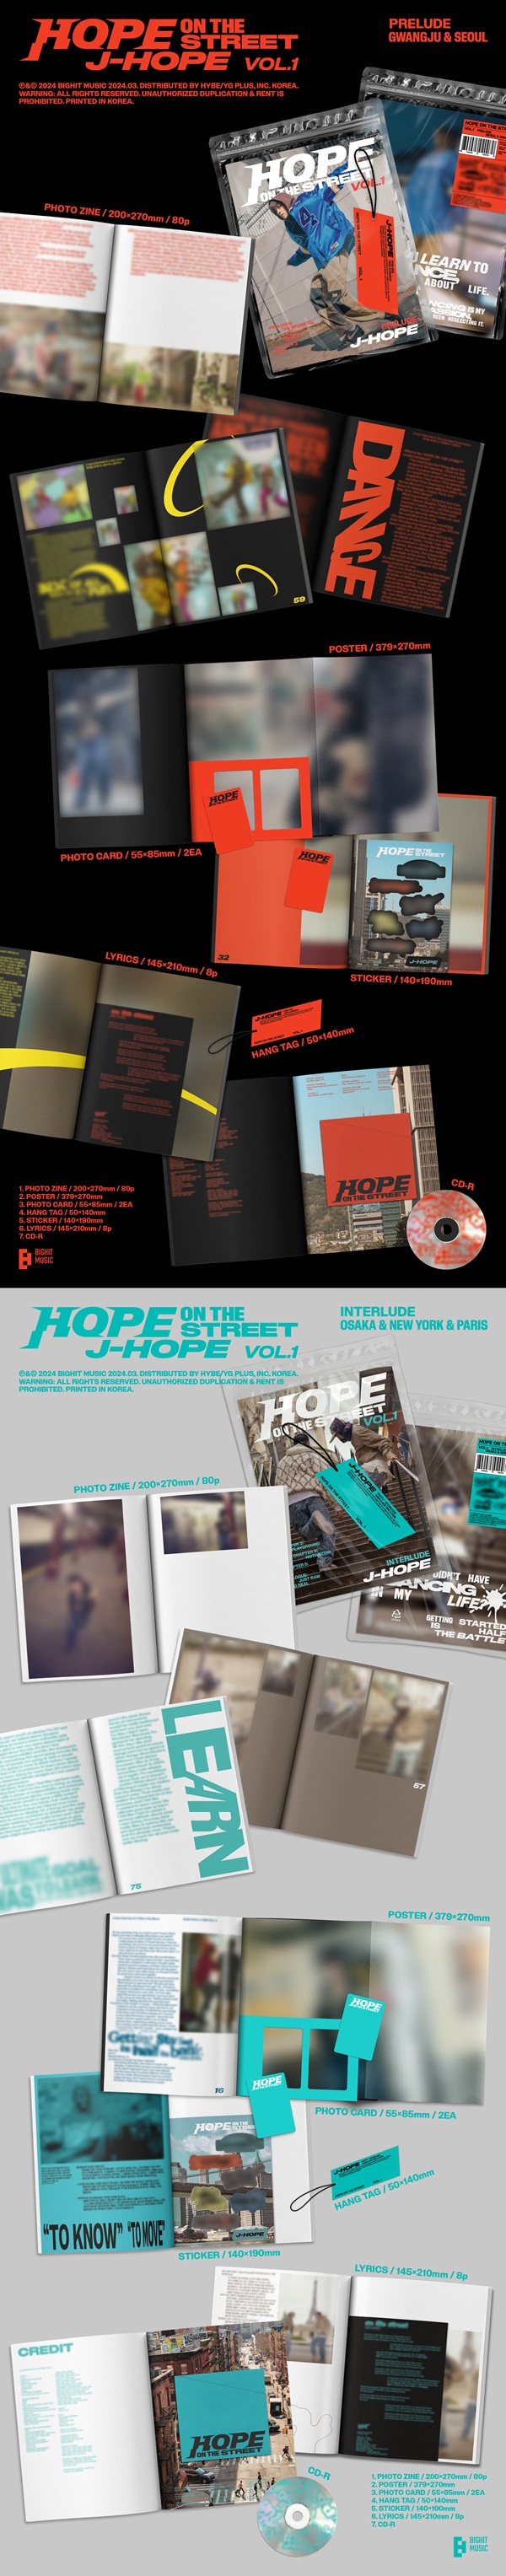 J-HOPE (BTS)